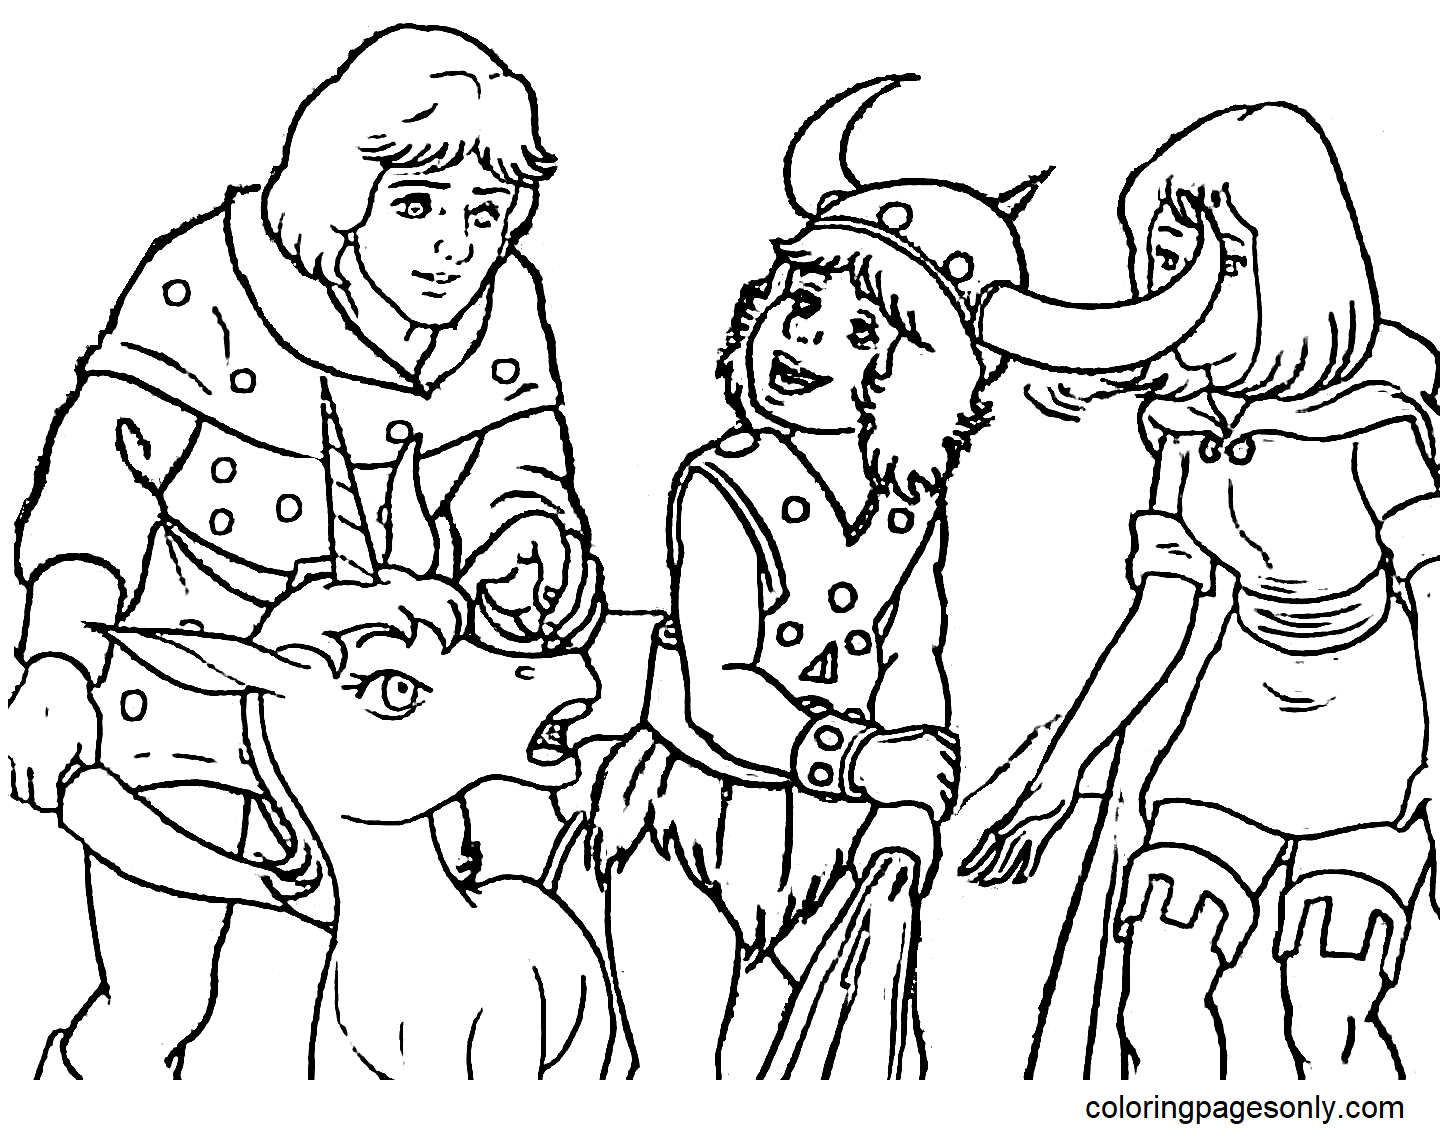 Hank le Ranger, Bobby le Barbare, Sheila la Voleuse et Uni la Licorne de Donjons & Dragons